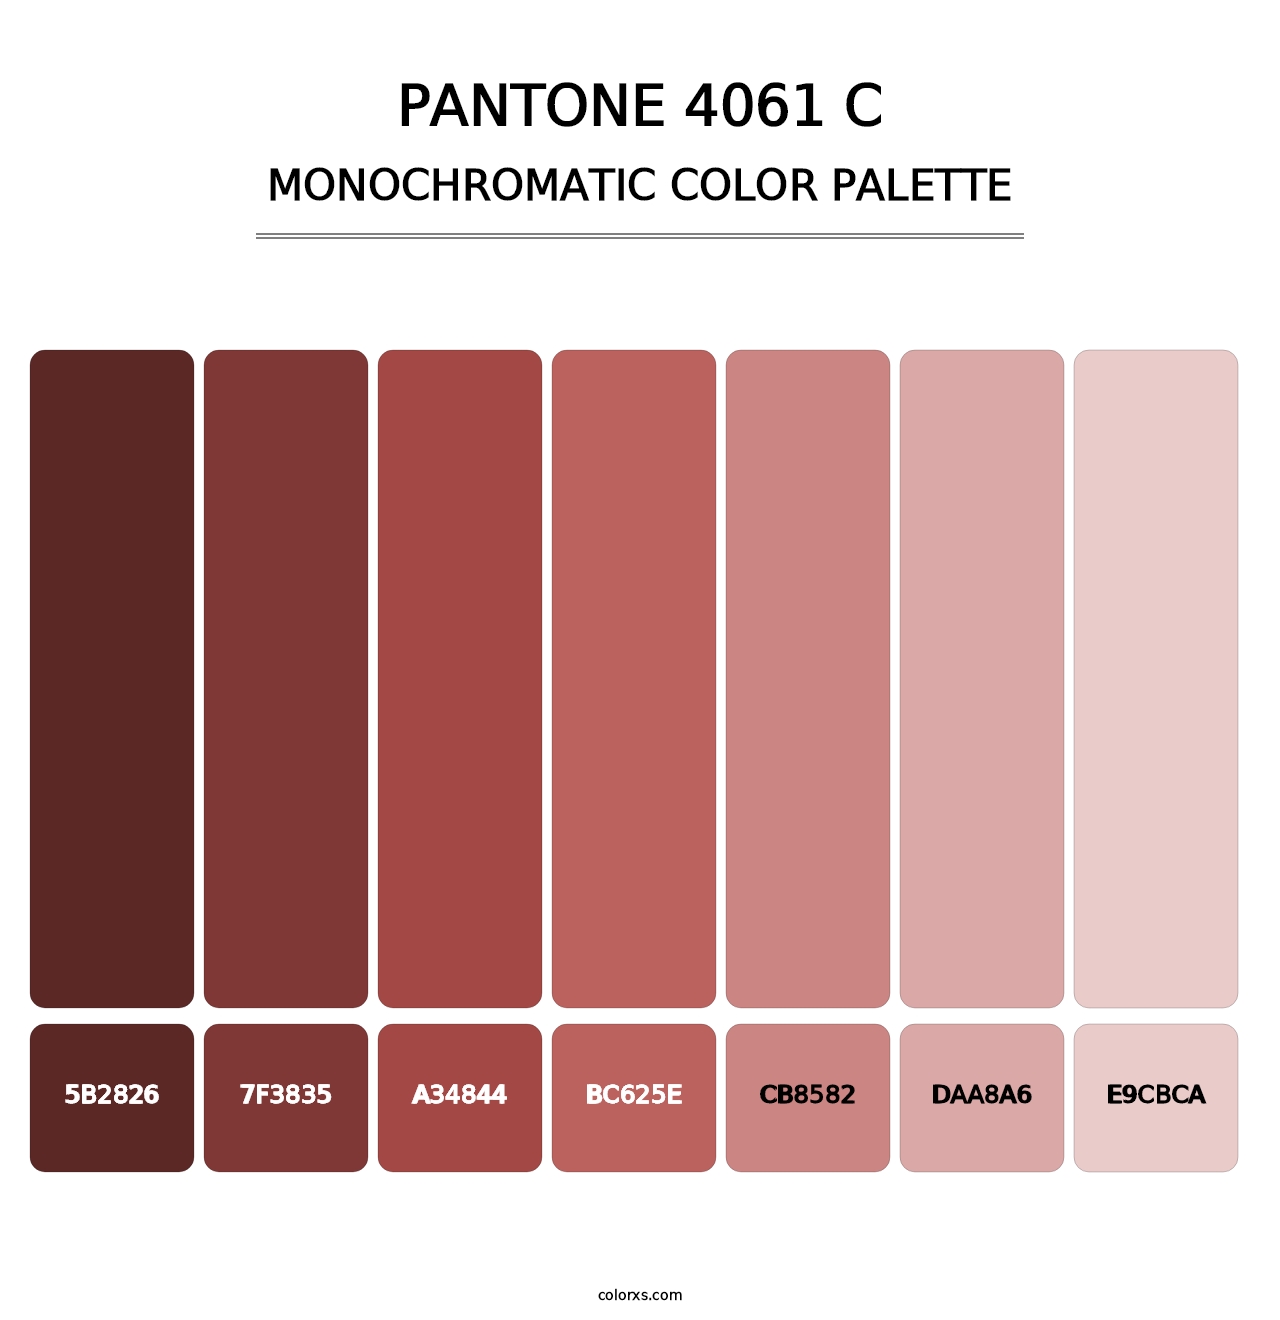 PANTONE 4061 C - Monochromatic Color Palette